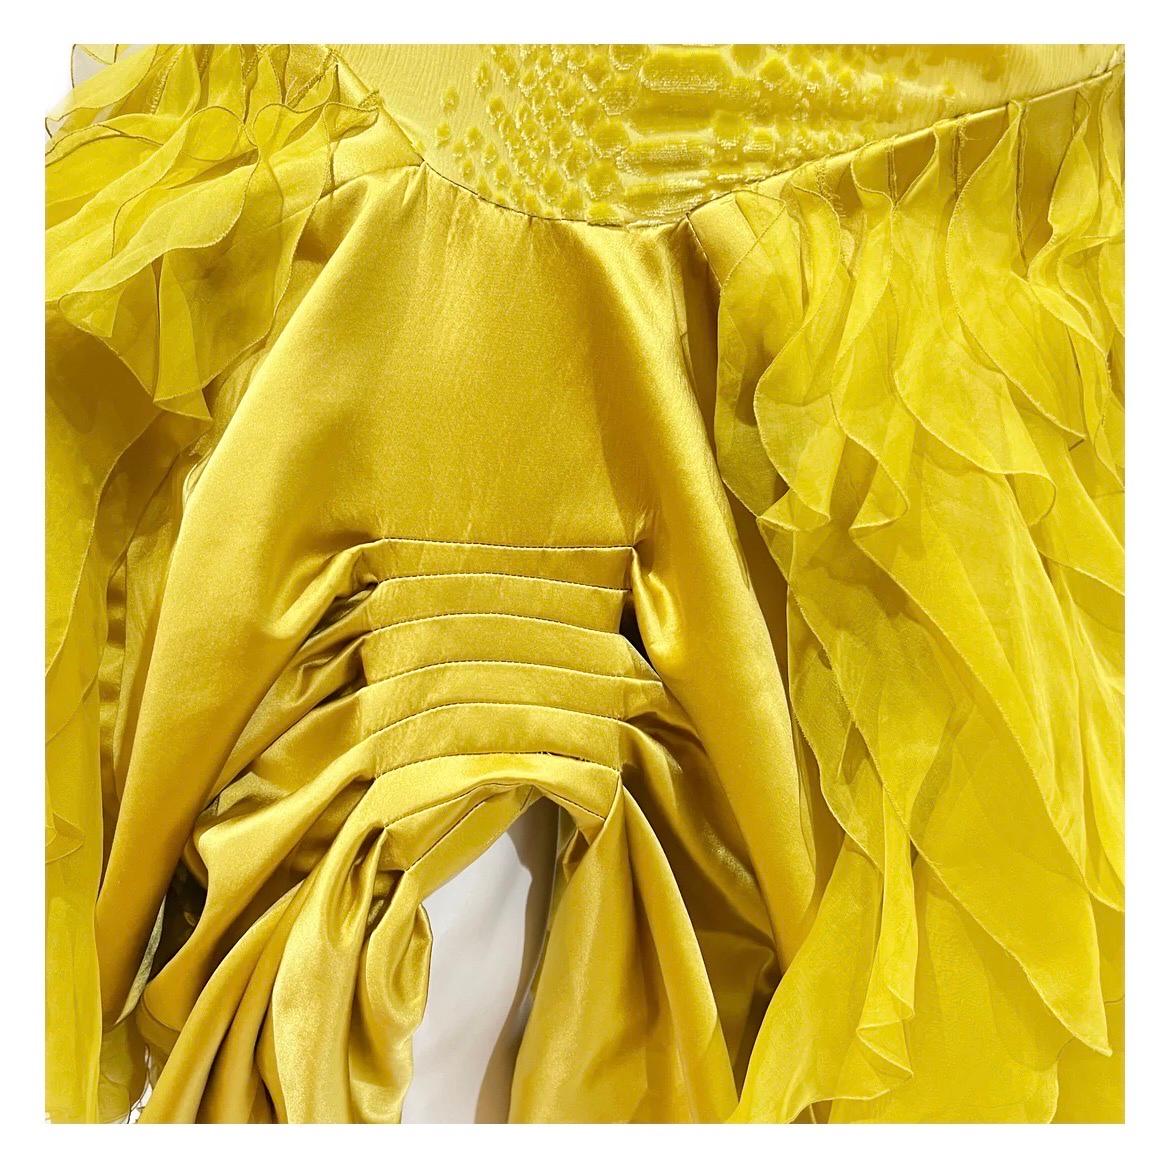 Women's Christian Dior Ruched Yellow Ruffle Gown FW2004 (John Galliano